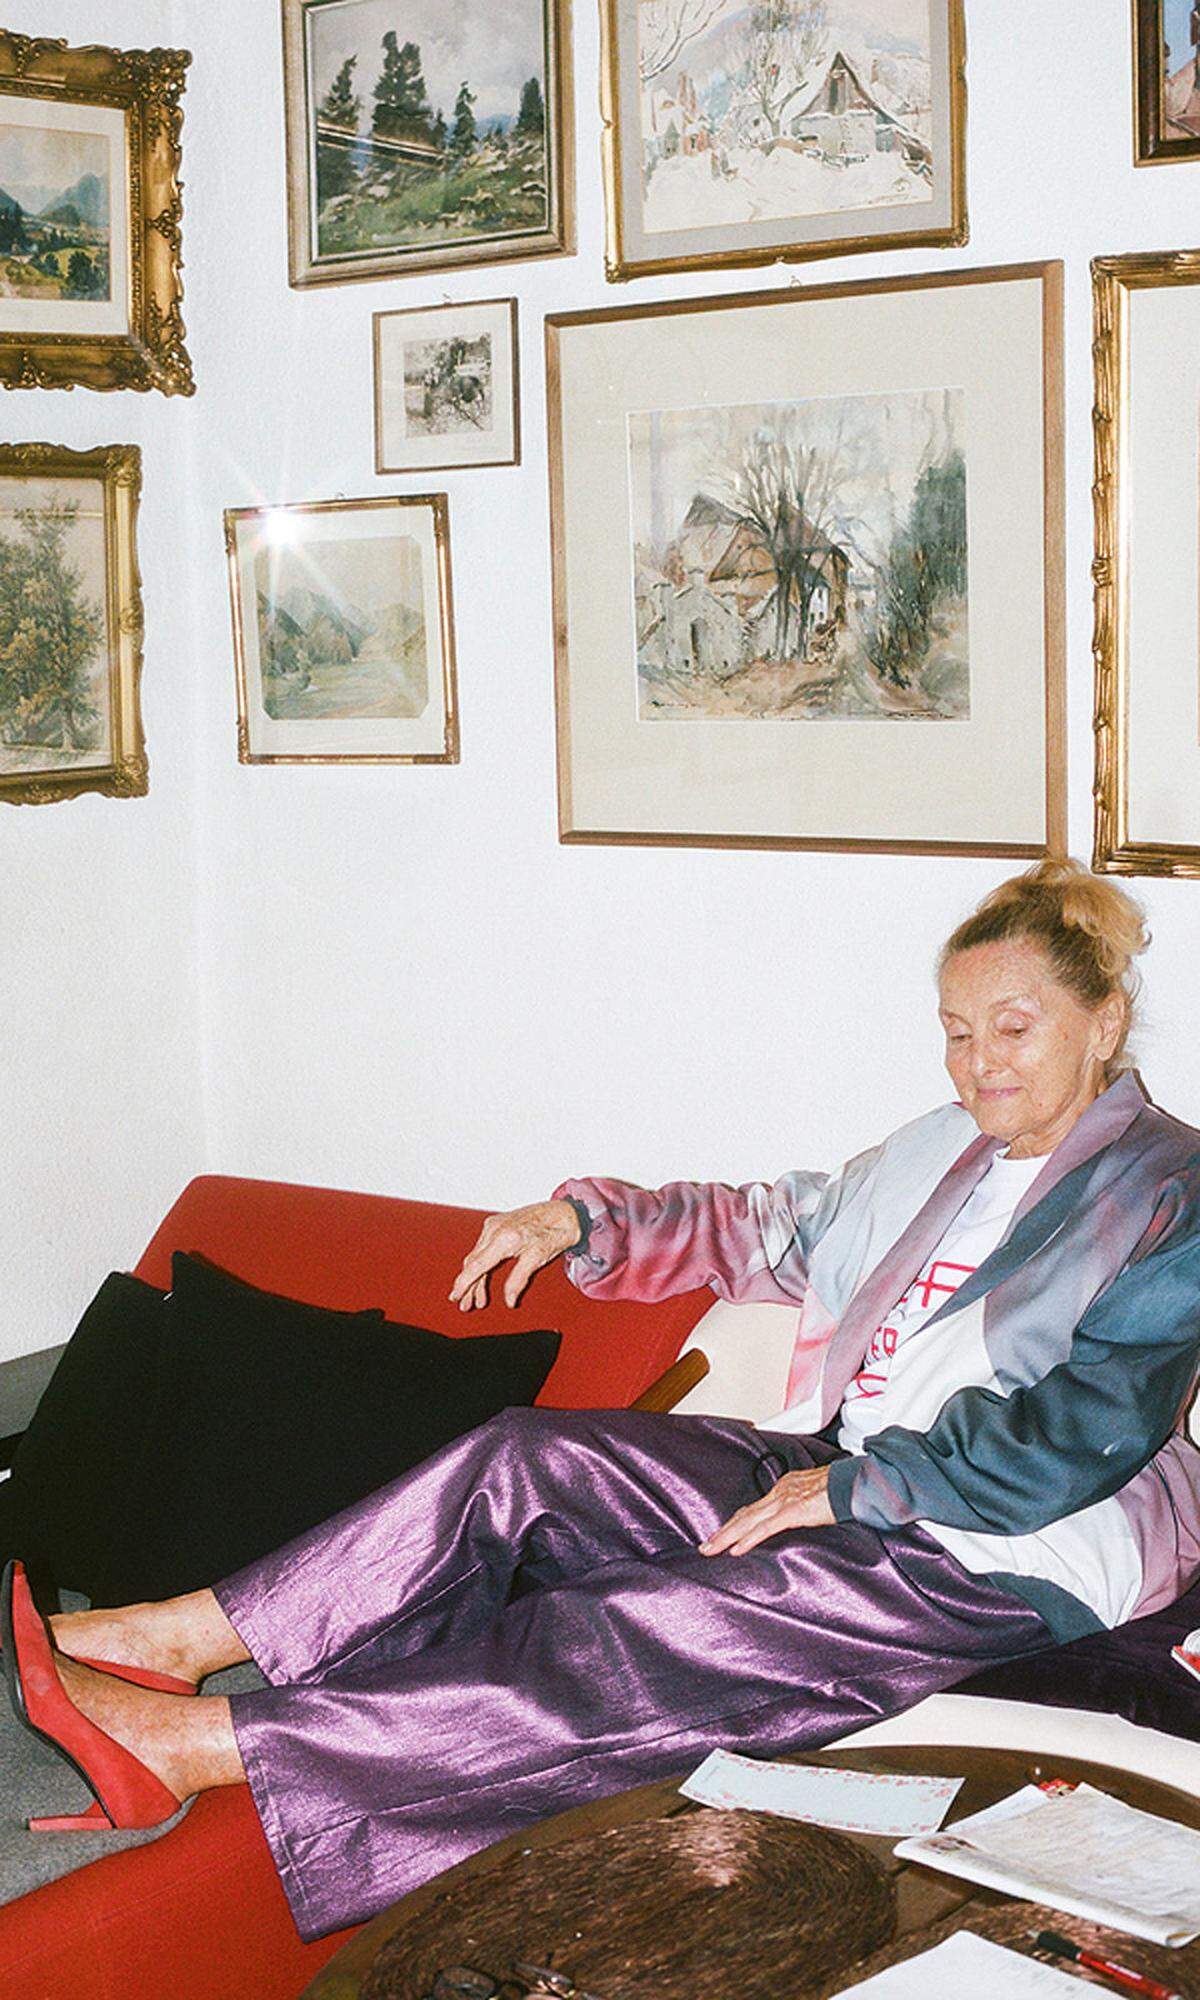 Hausbesuch. Für eine Homestory mit Mode erlaubte Erni Mangold der Designerin Romana Zöchling und der Fotografin Lisa Edi einen Blick in ihre Wohnung. Die Fotos werden gezeigt.